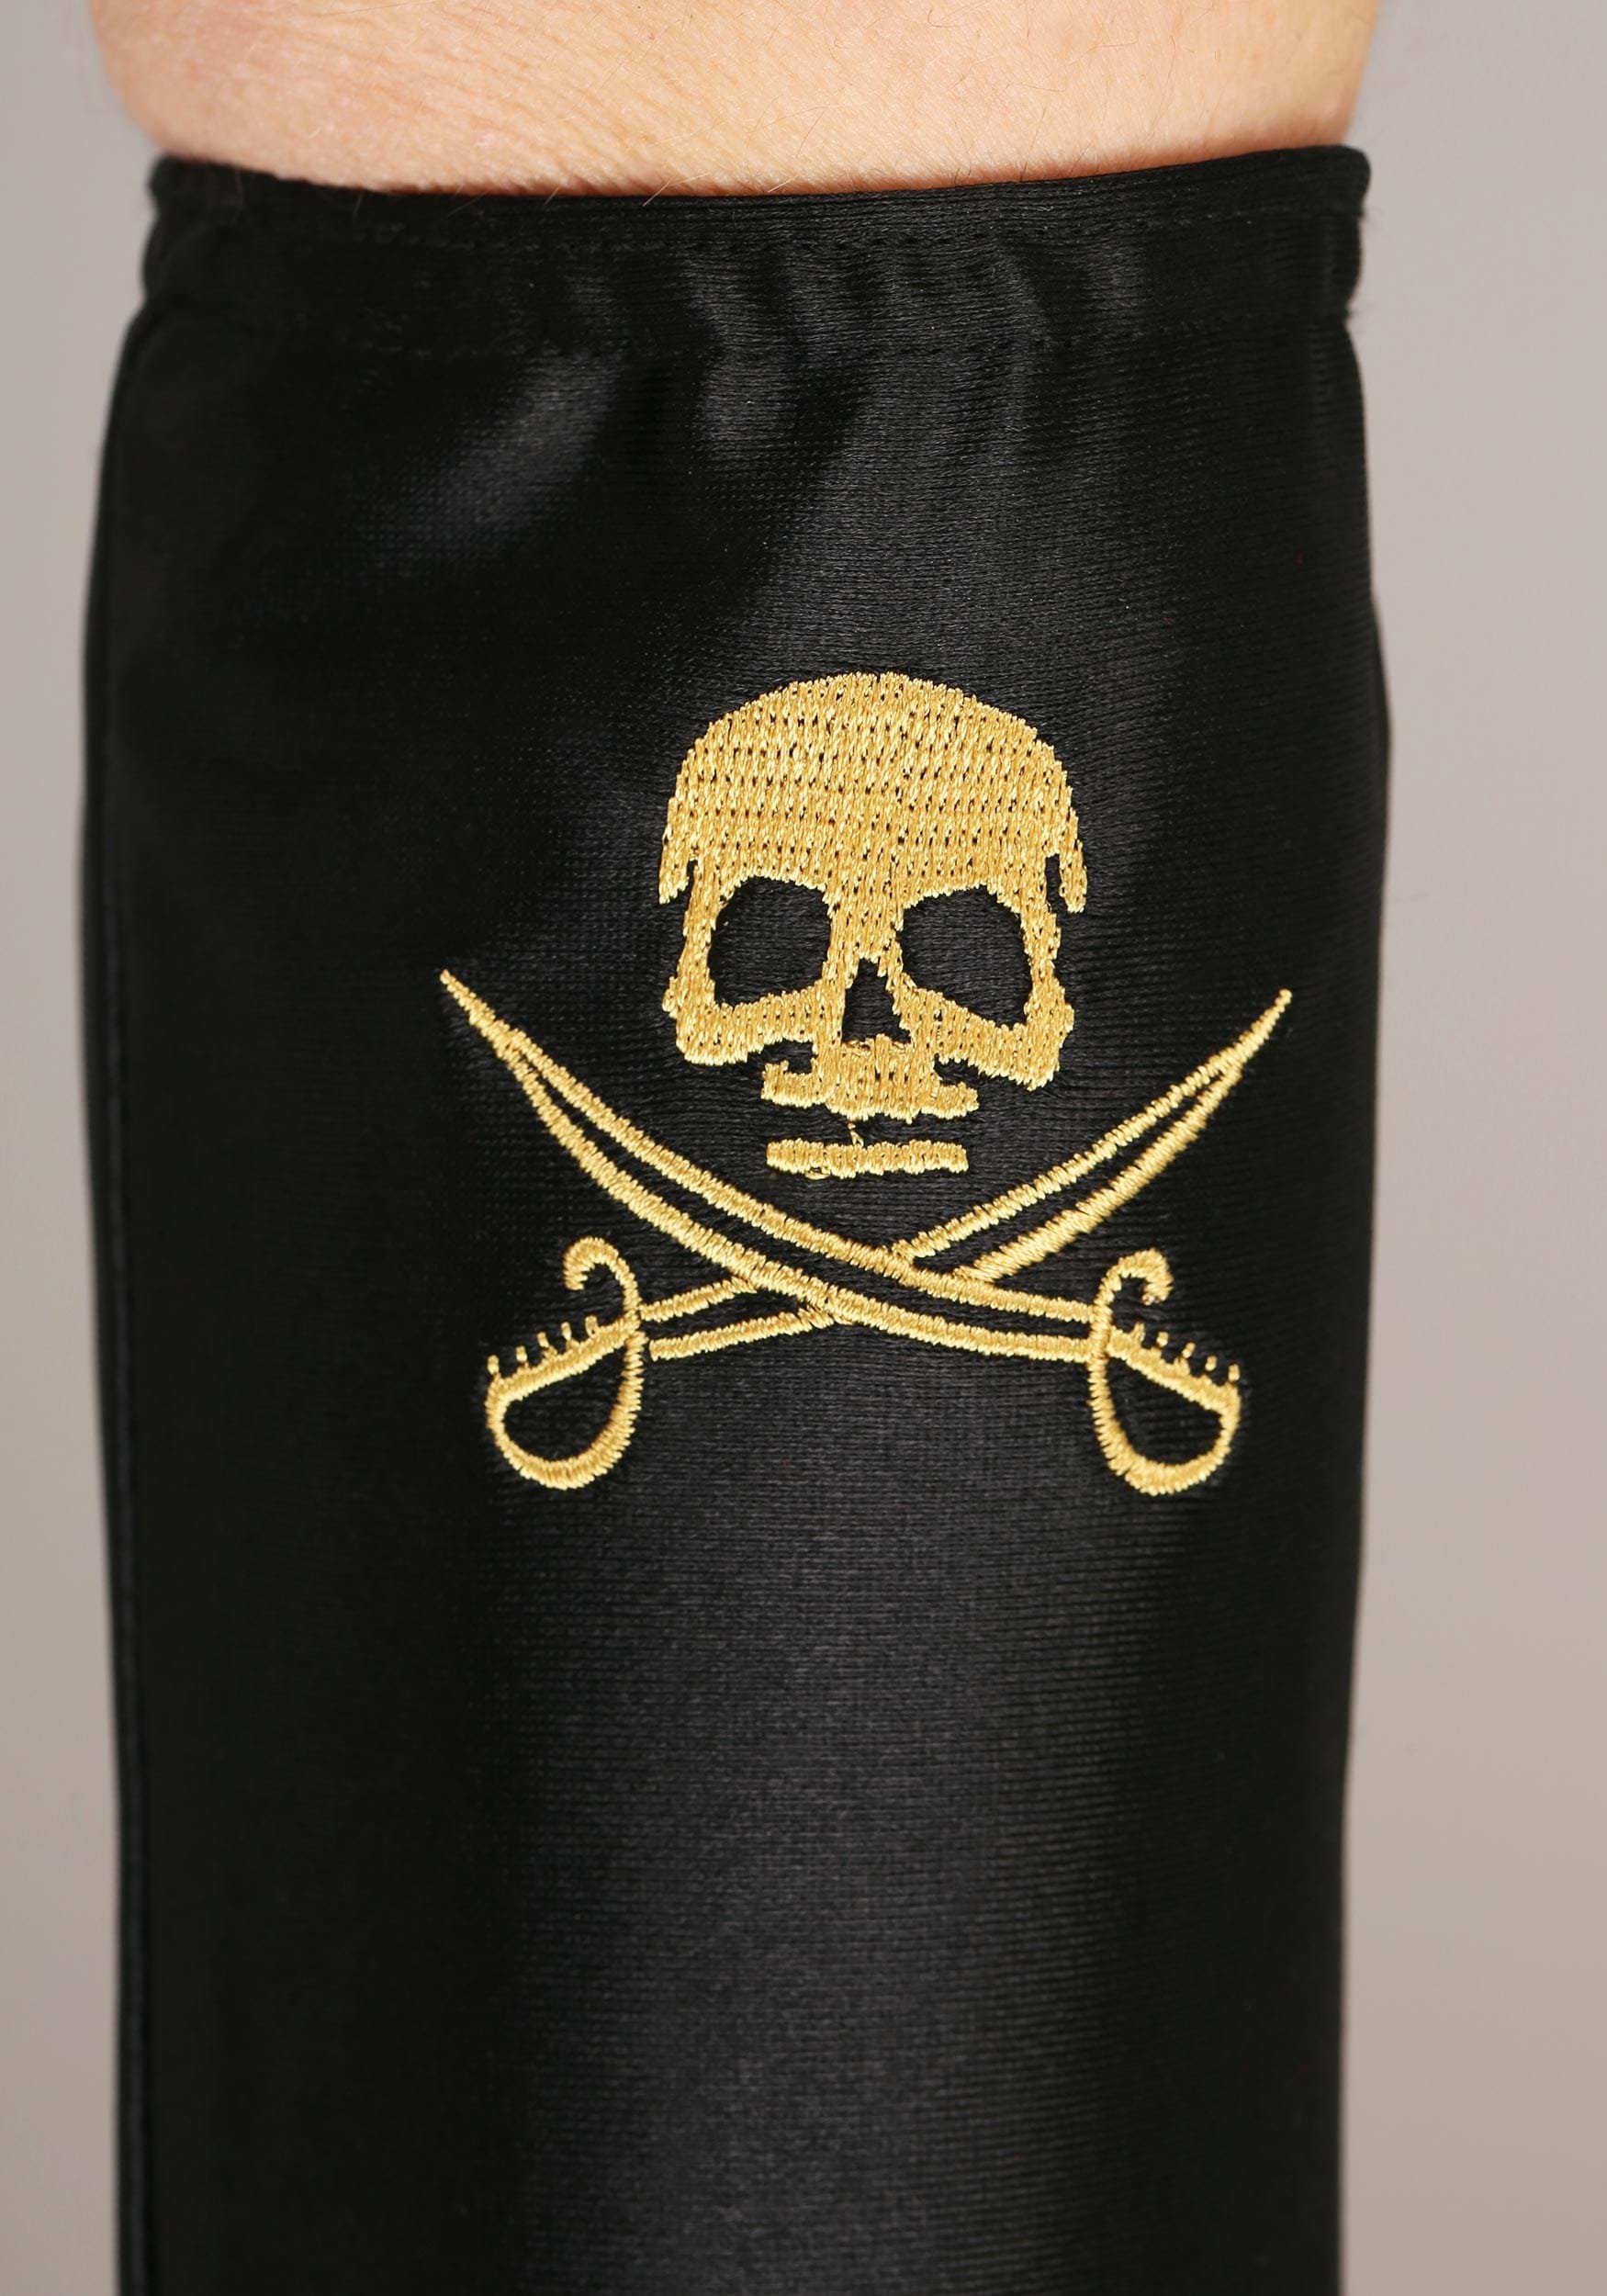 Salty Seas Pirate Fancy Dress Costume For Women's